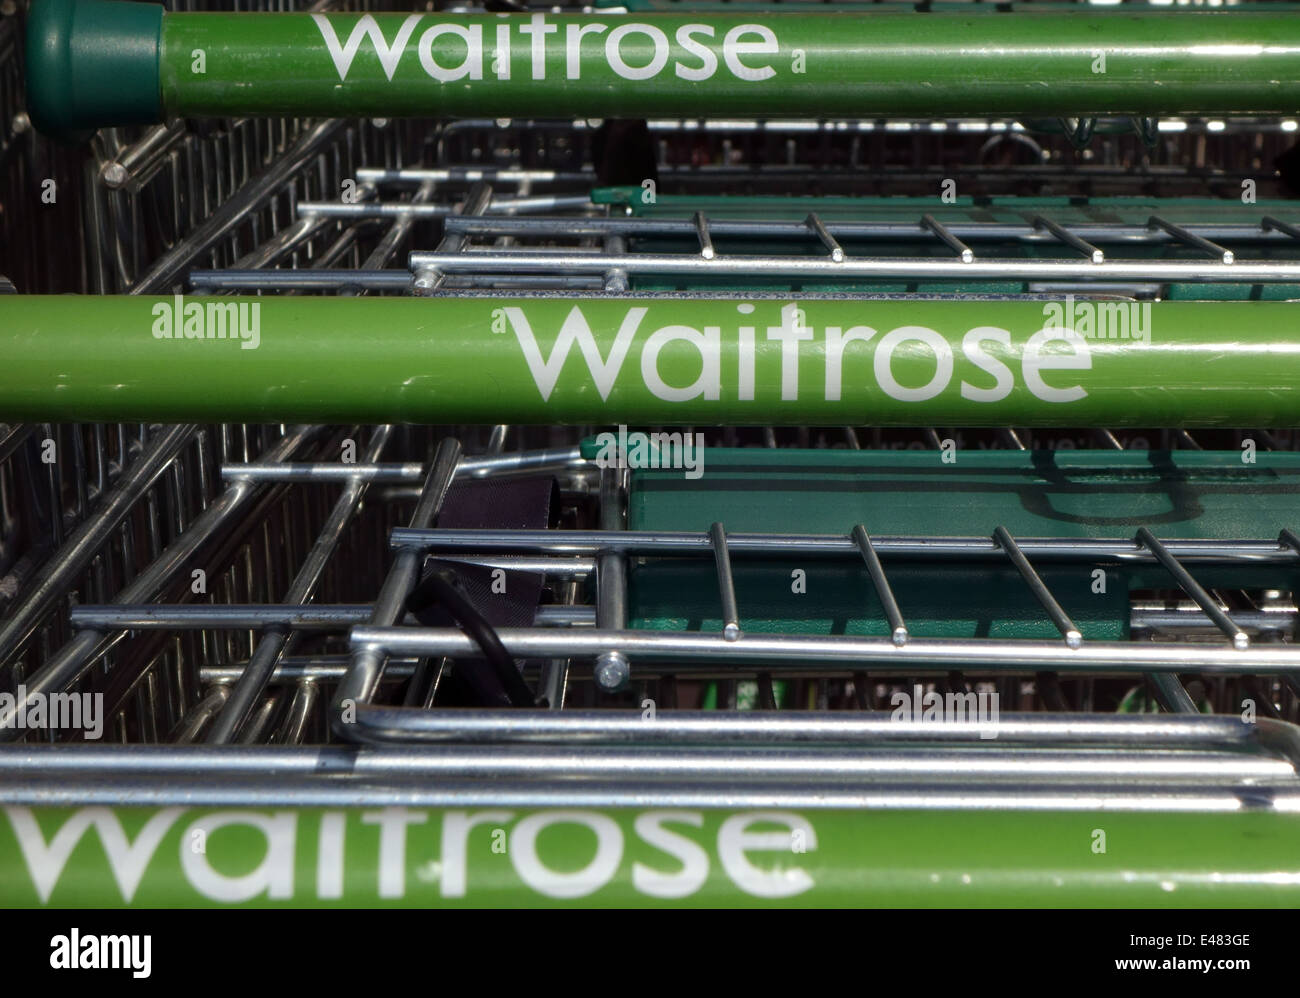 Waitrose carrelli per supermercati, Somerset, Inghilterra Foto Stock